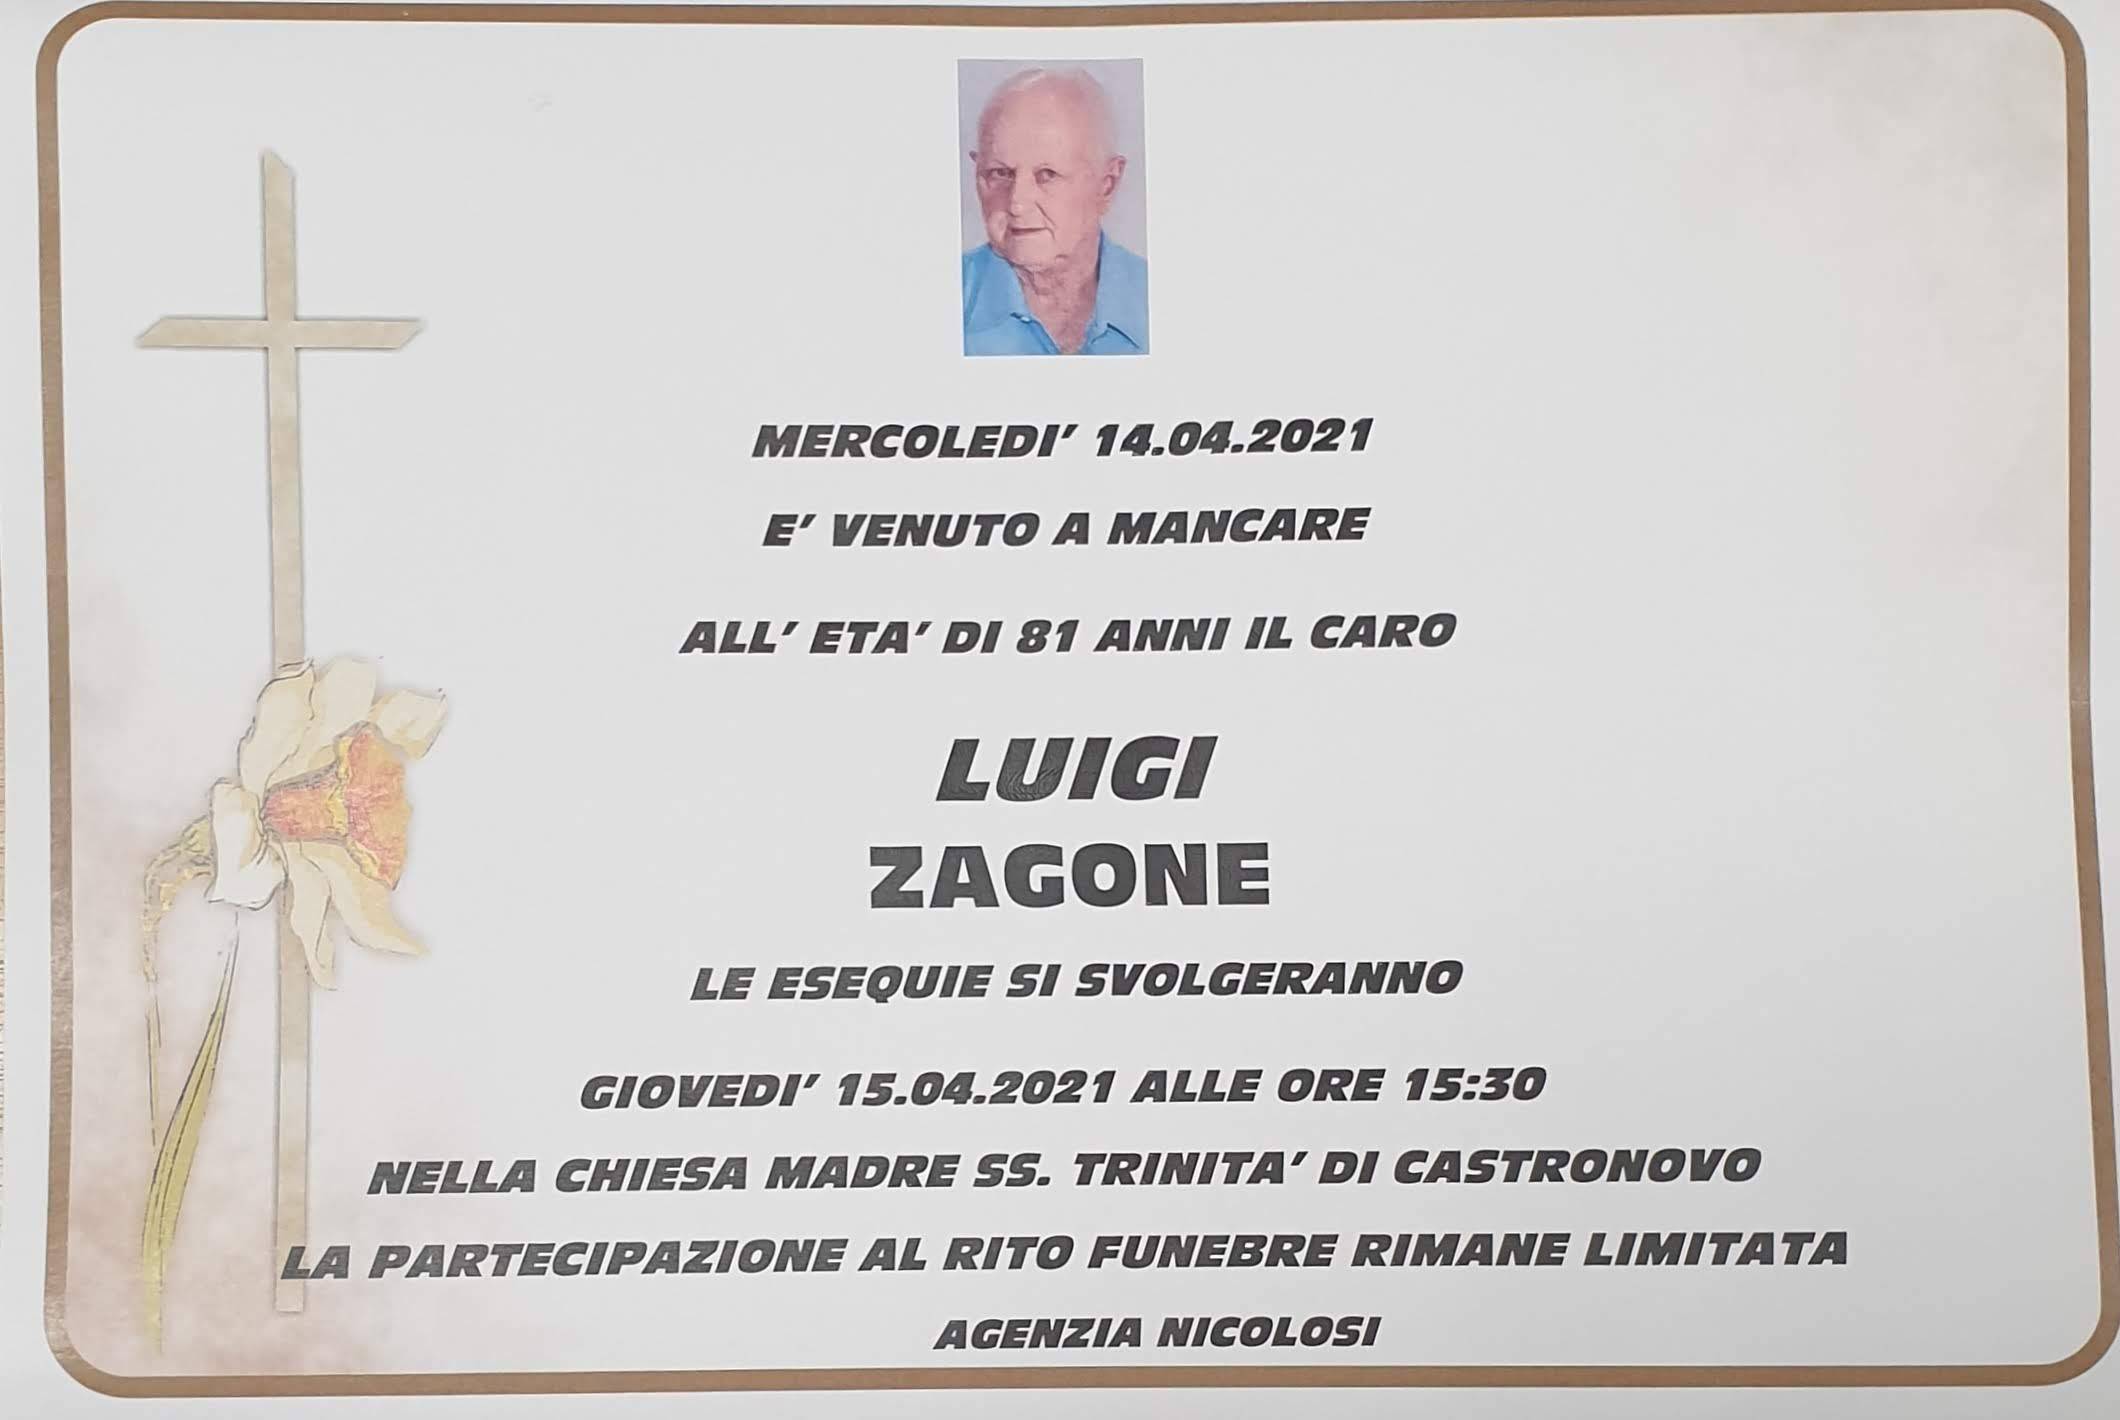 Luigi Zagone